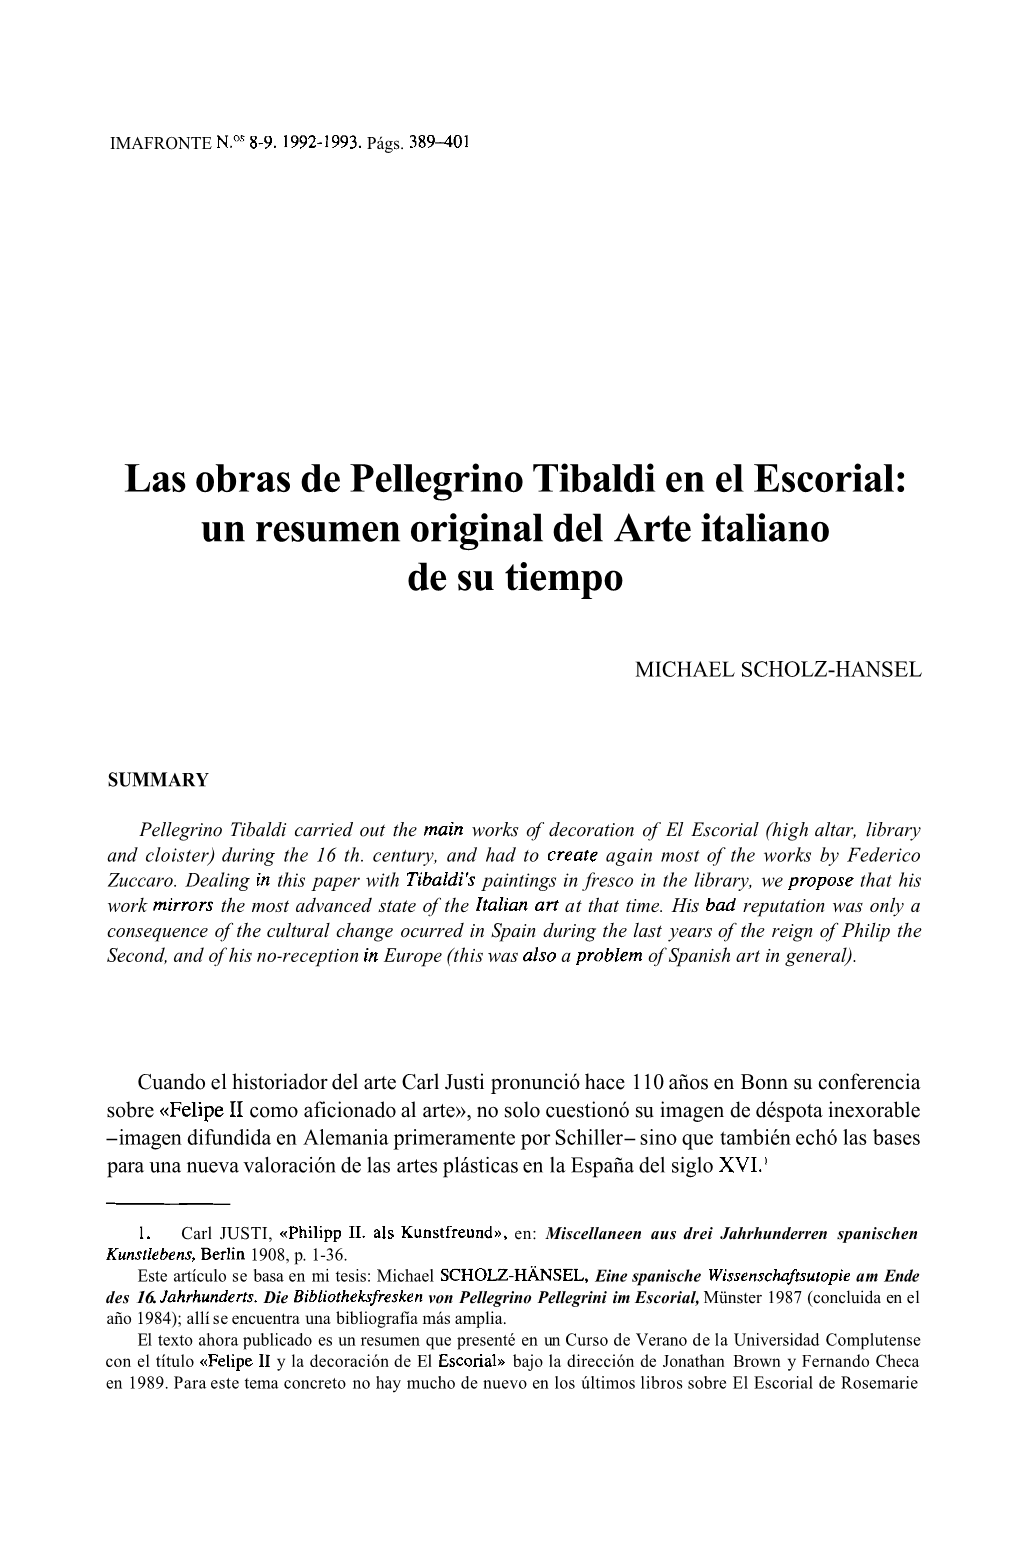 Las Obras De Pellegrino Tibaldi En El Escorial: Un Resumen Original Del Arte Italiano De Su Tiempo